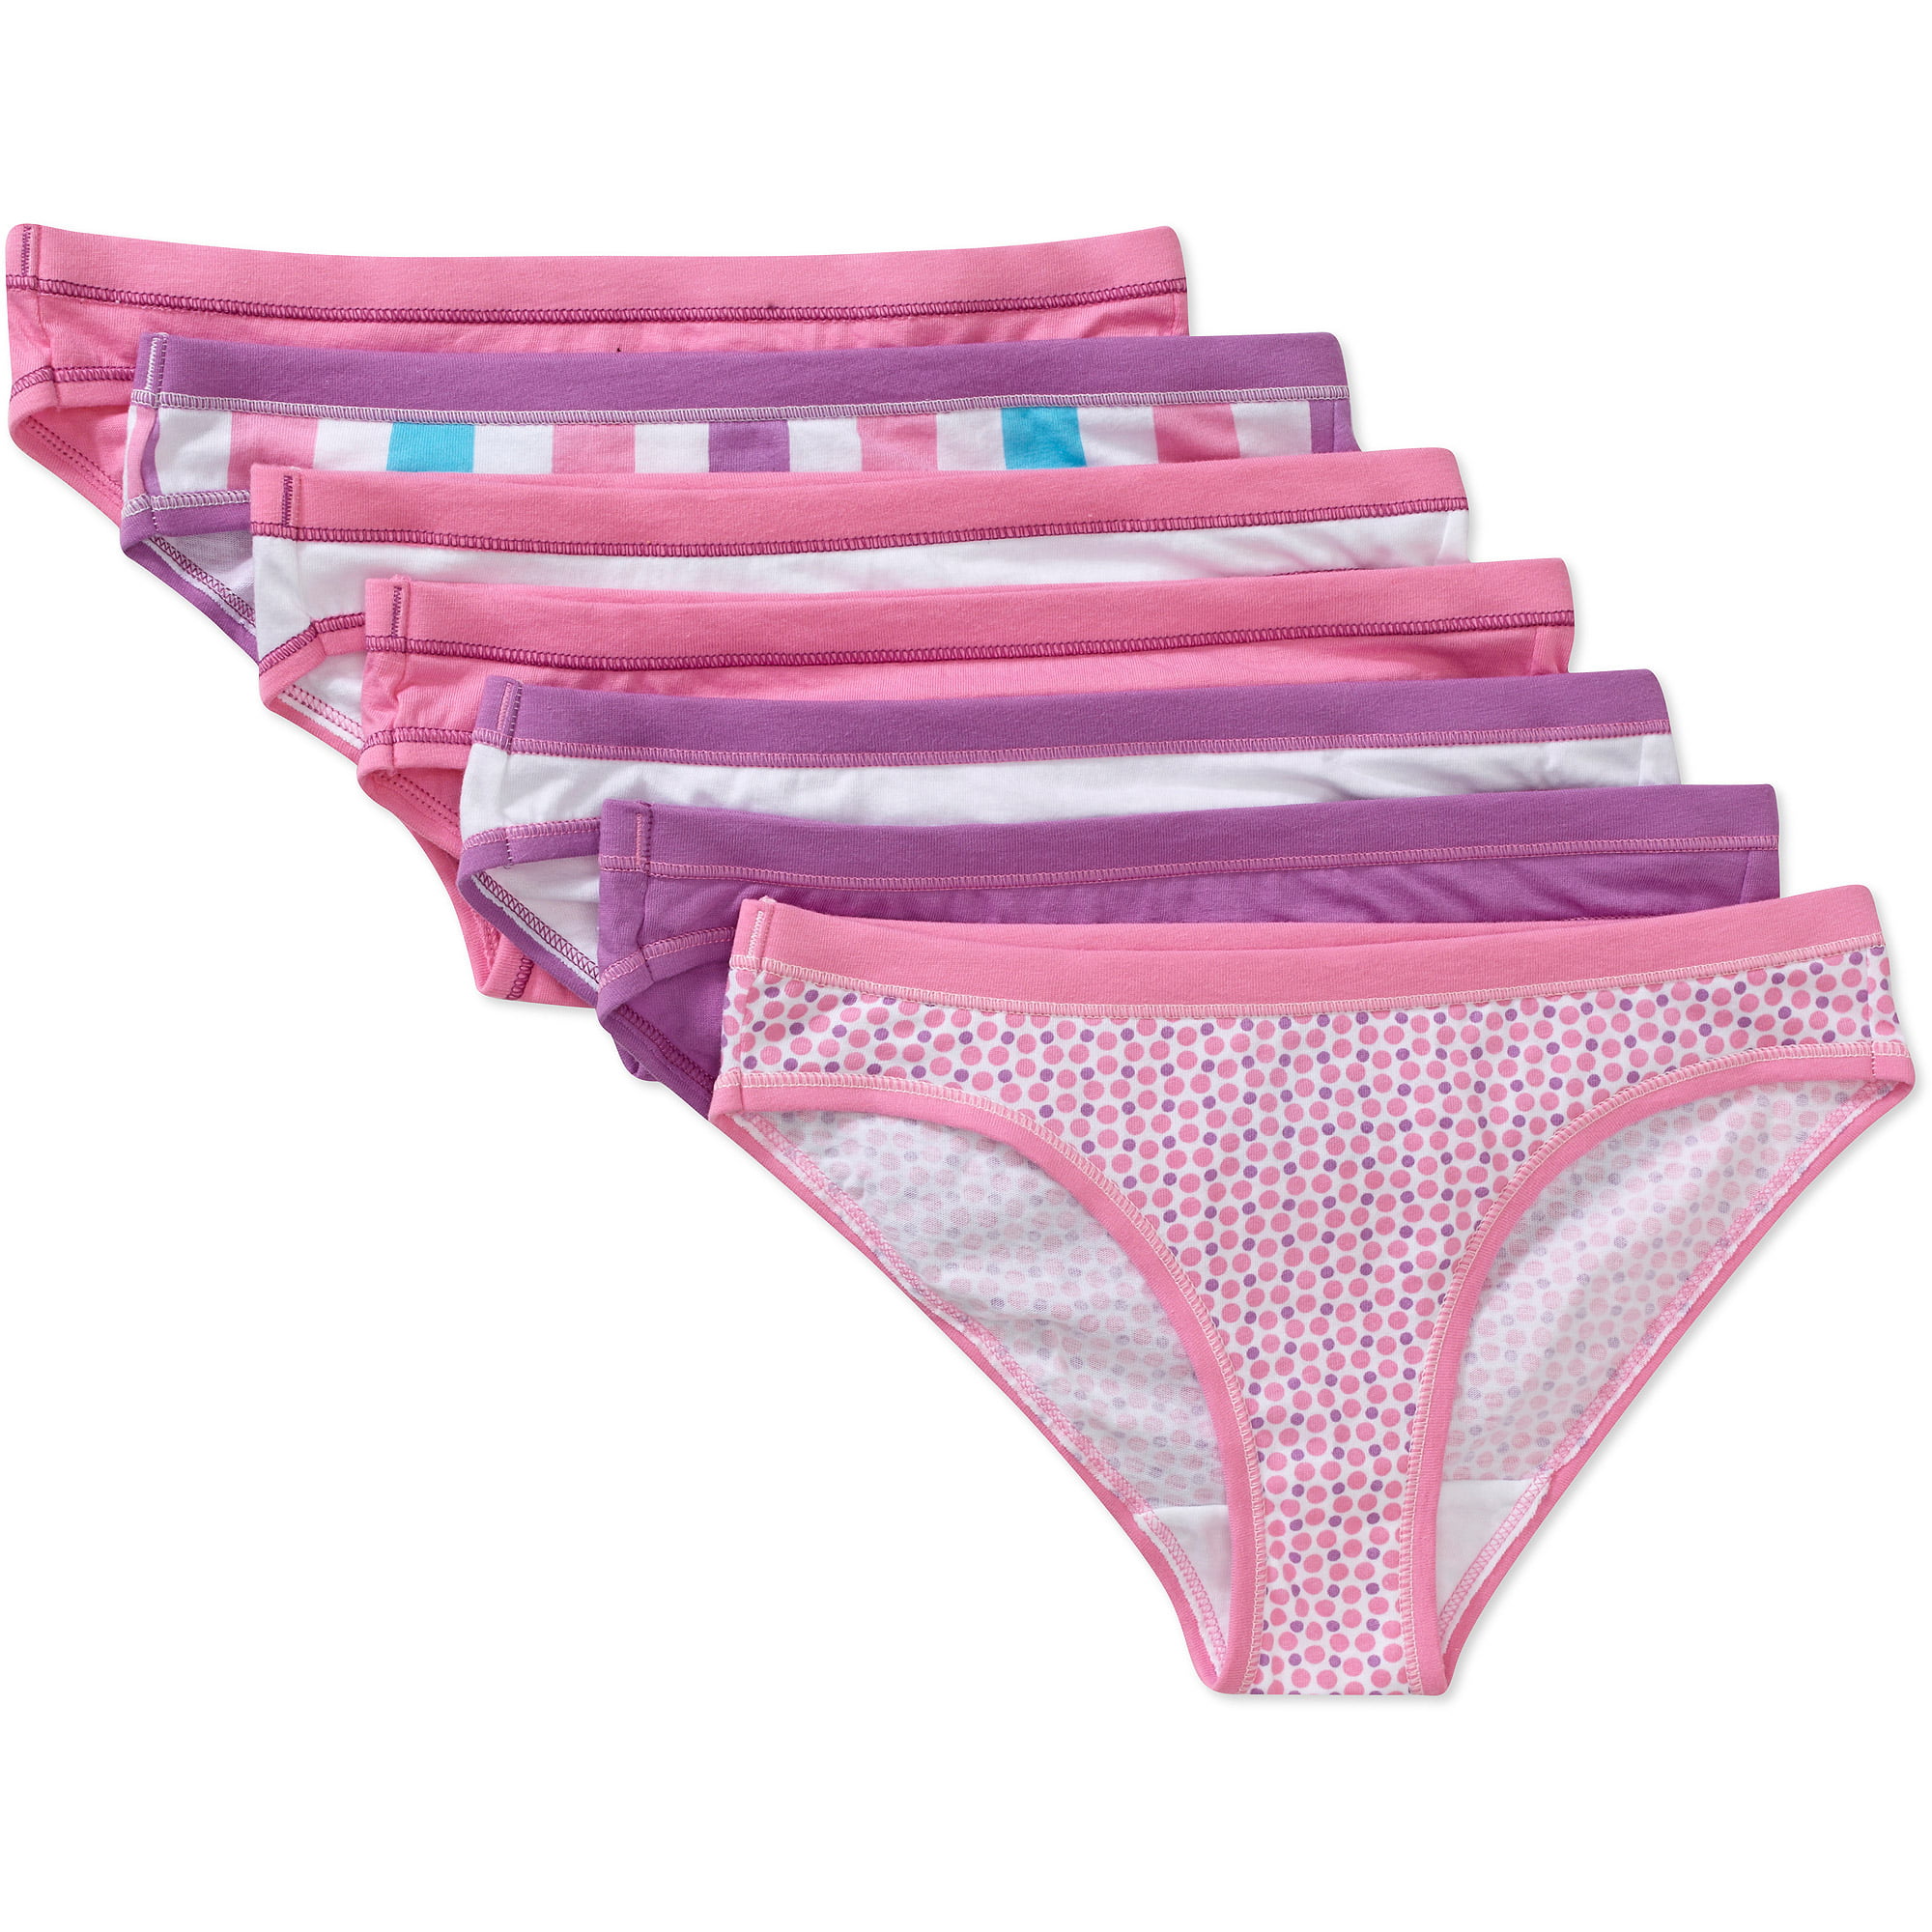 Finihen Girls Soft Cotton Underwear Bring Cool Comfort Toddler Briefs 6//3 Pack